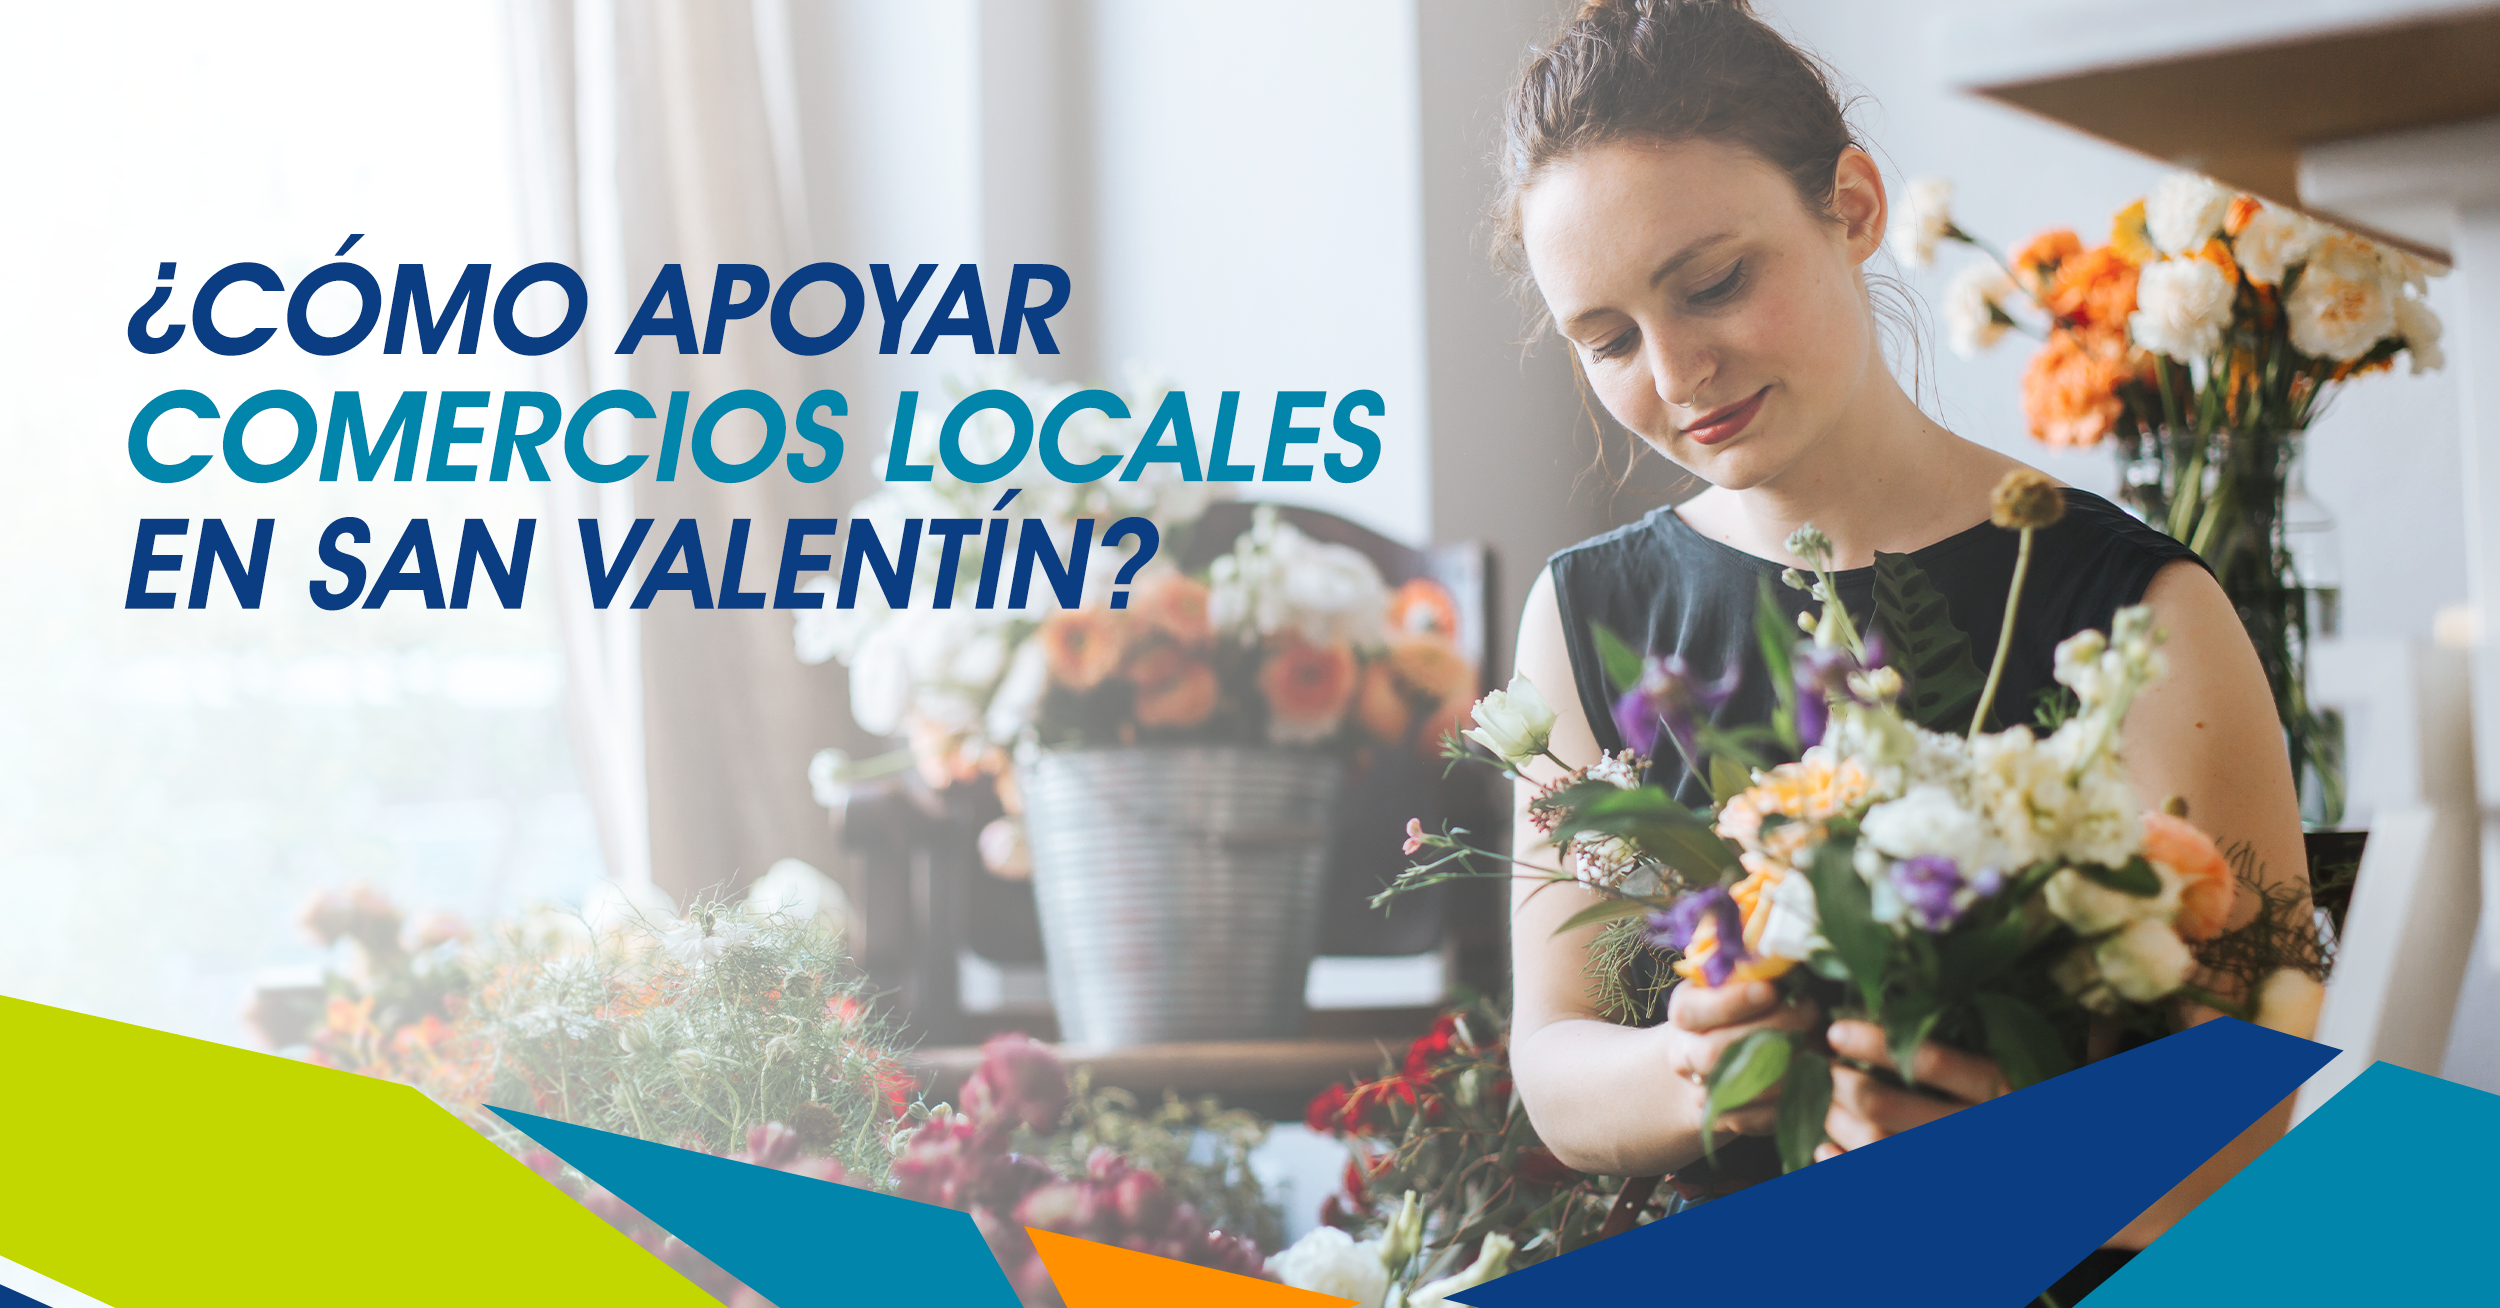 ¿Cómo apoyar comercios locales en San Valentín?